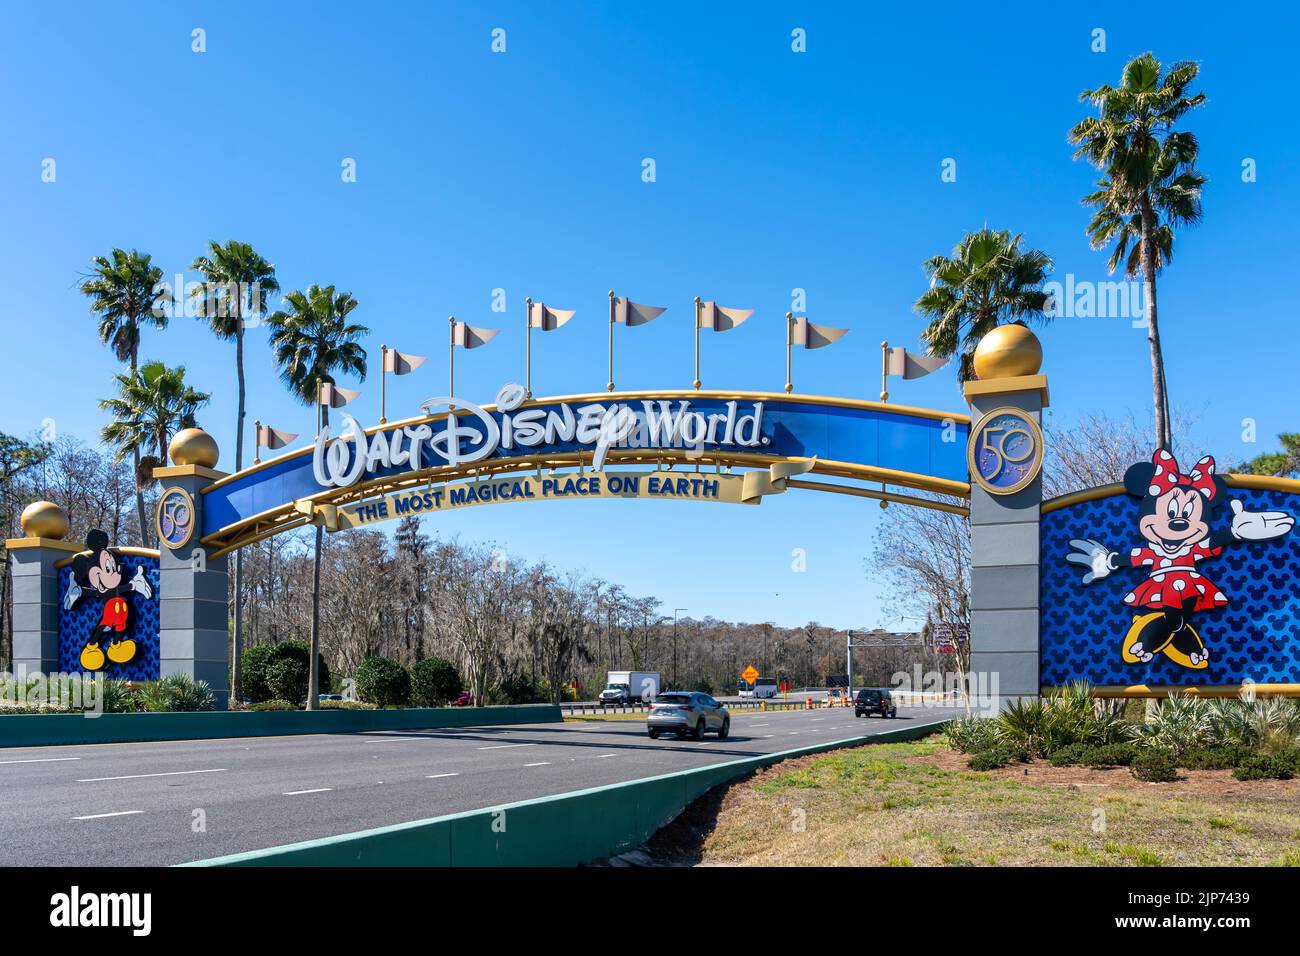 Orlando, Floride, États-Unis - 9 février 2022 : une porte d'entrée de Walt Disney World sur la route à Orlando, Floride, États-Unis. Walt Disney World est un divertissement r Banque D'Images